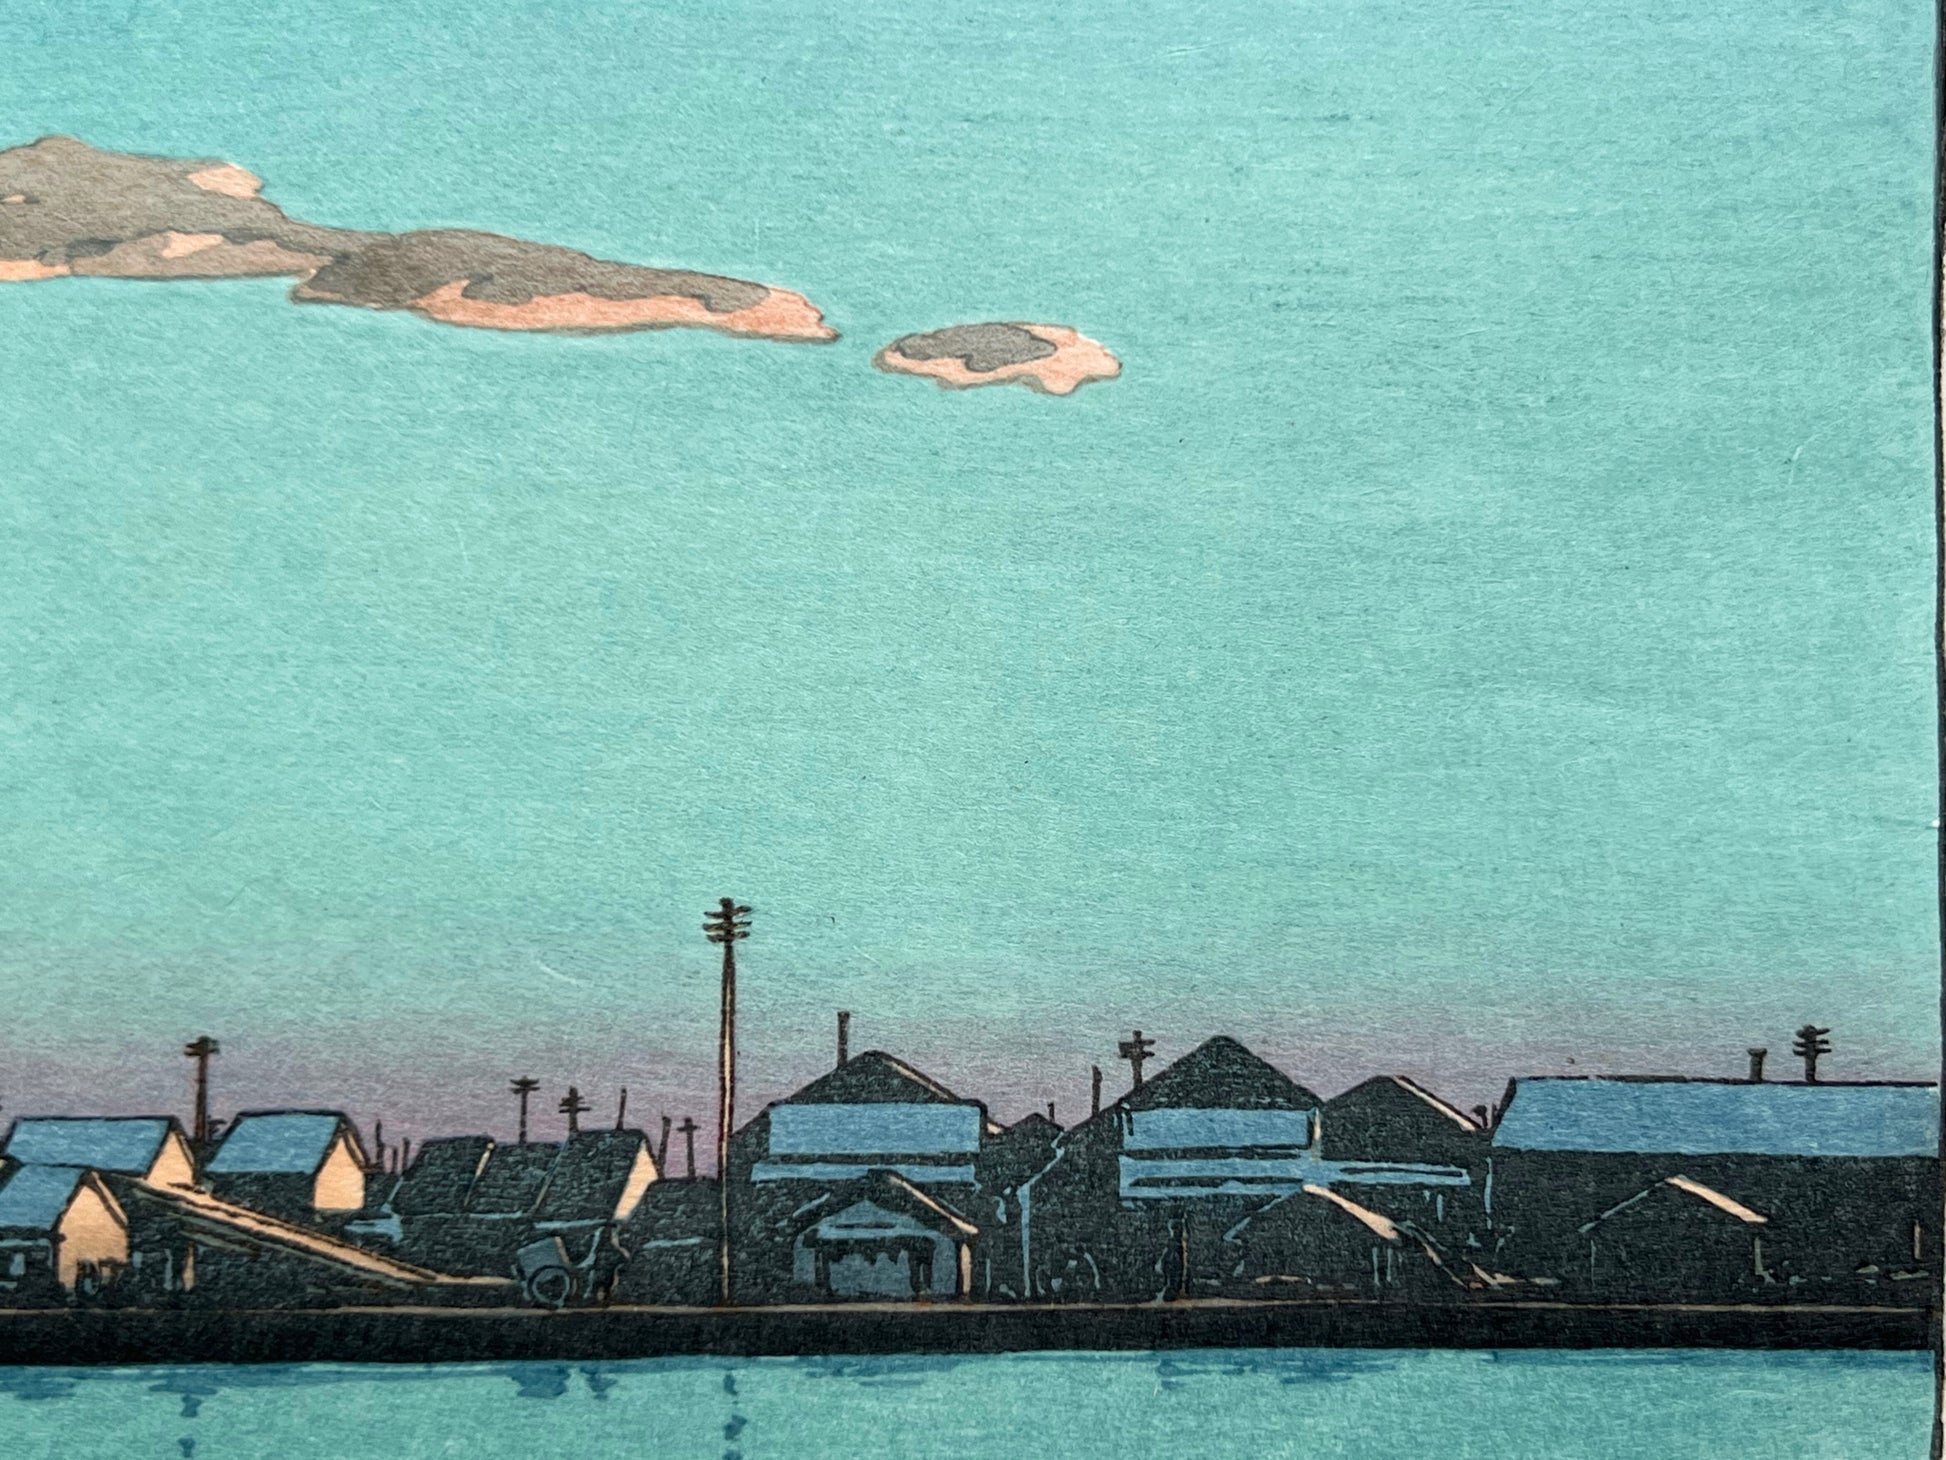 estampe japonaise de hasui kawase paysage riviere, maison, bateau au coucher du soleil, le ciel bleu et le quai avec des maisons